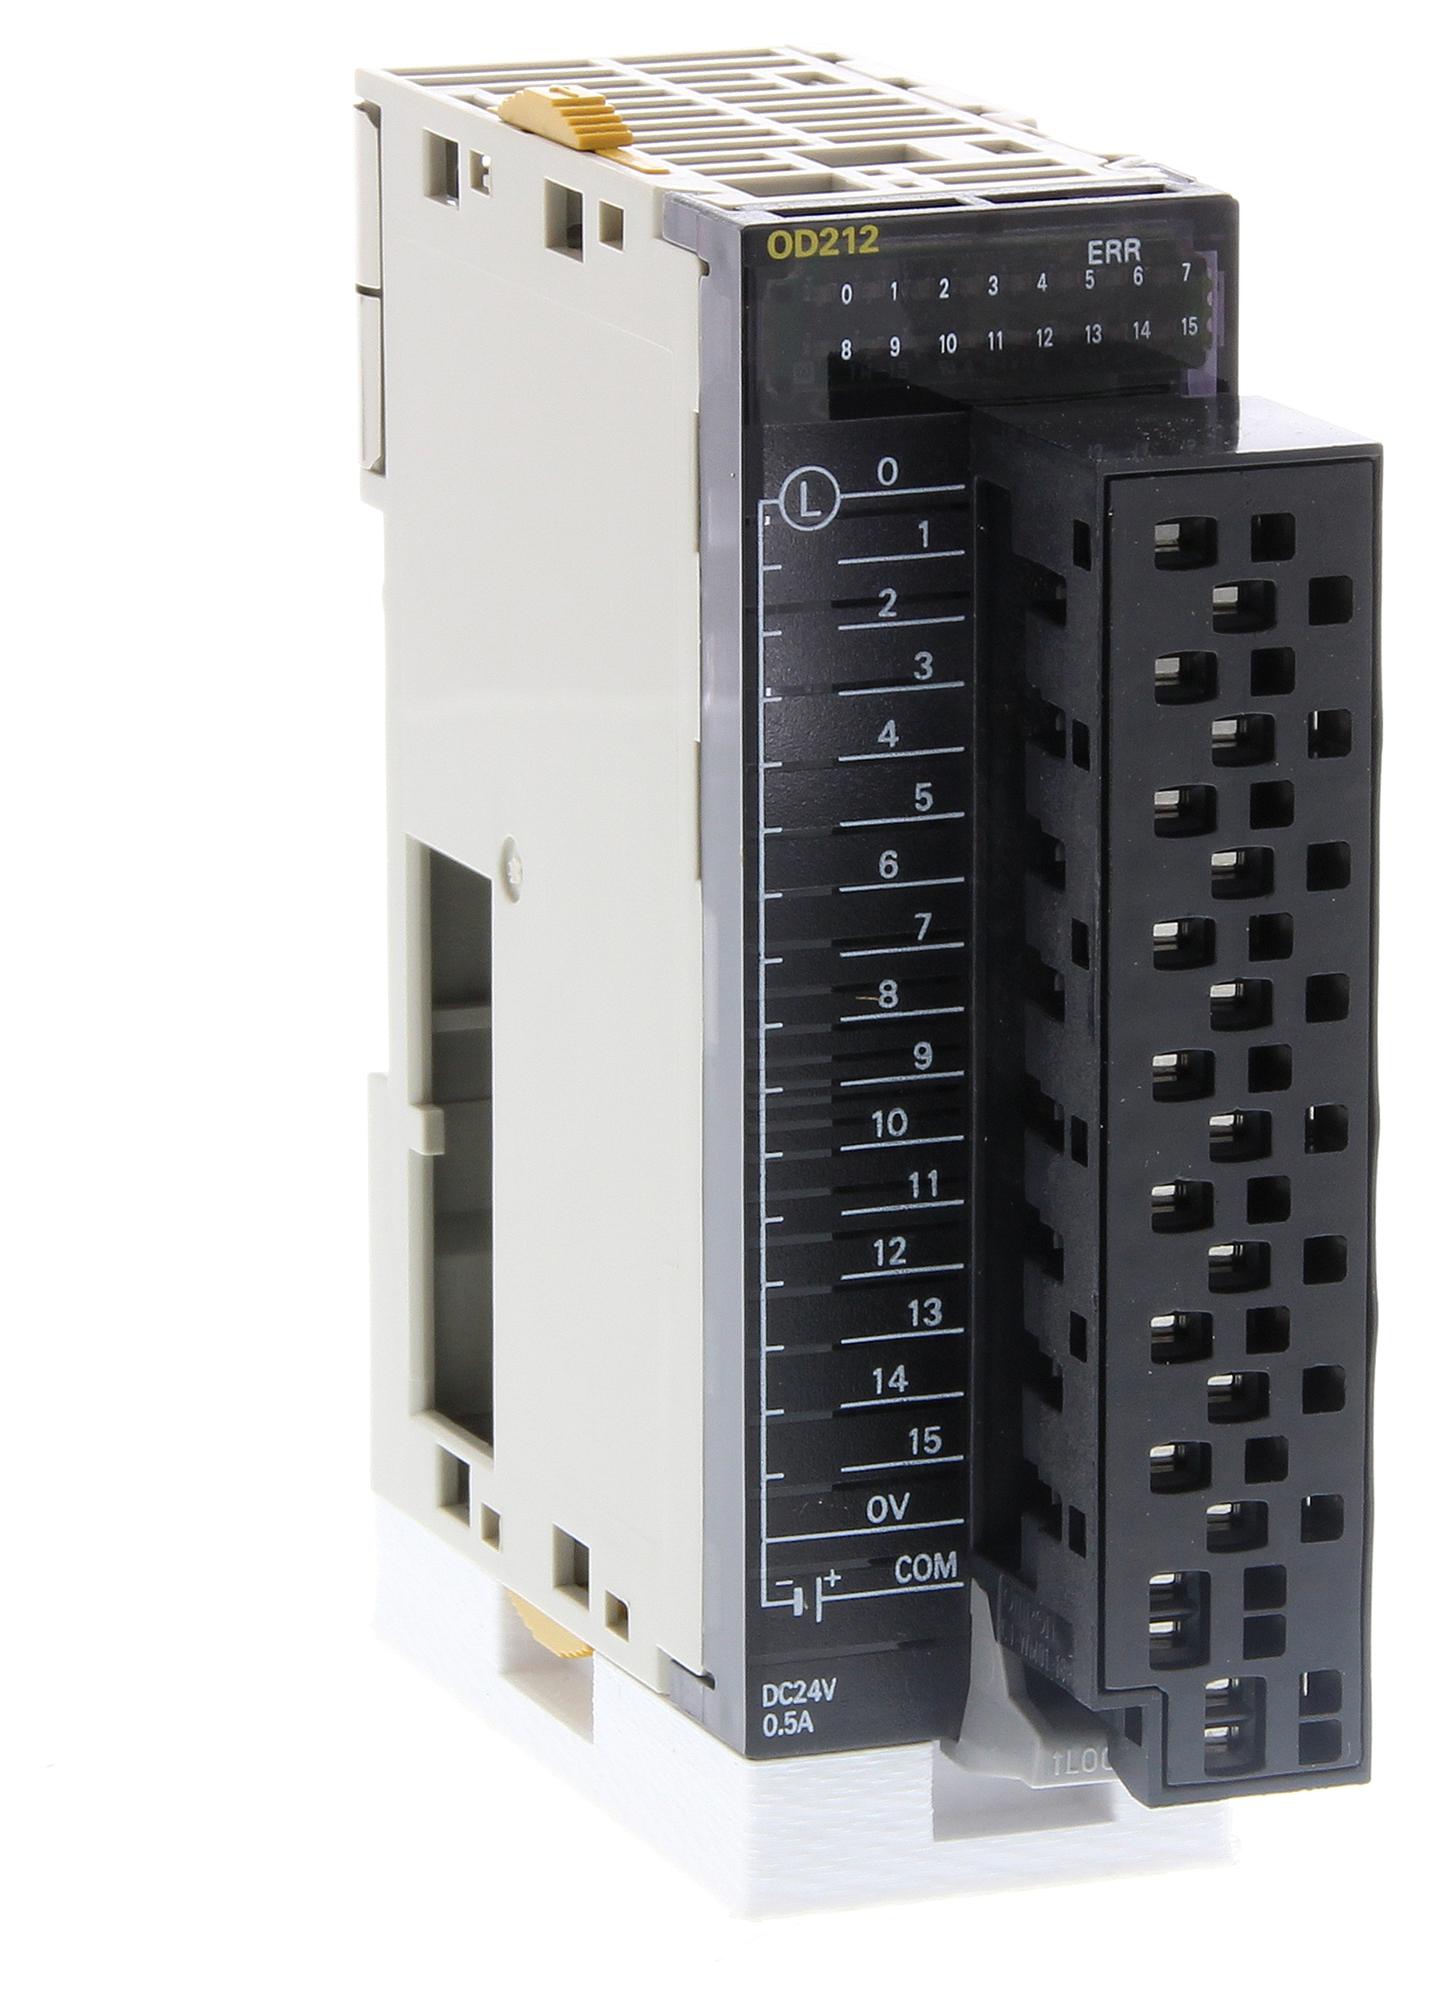 CJ1W-OD212(SL) DIGITAL OUTPUT PLC CONTROLLERS OMRON